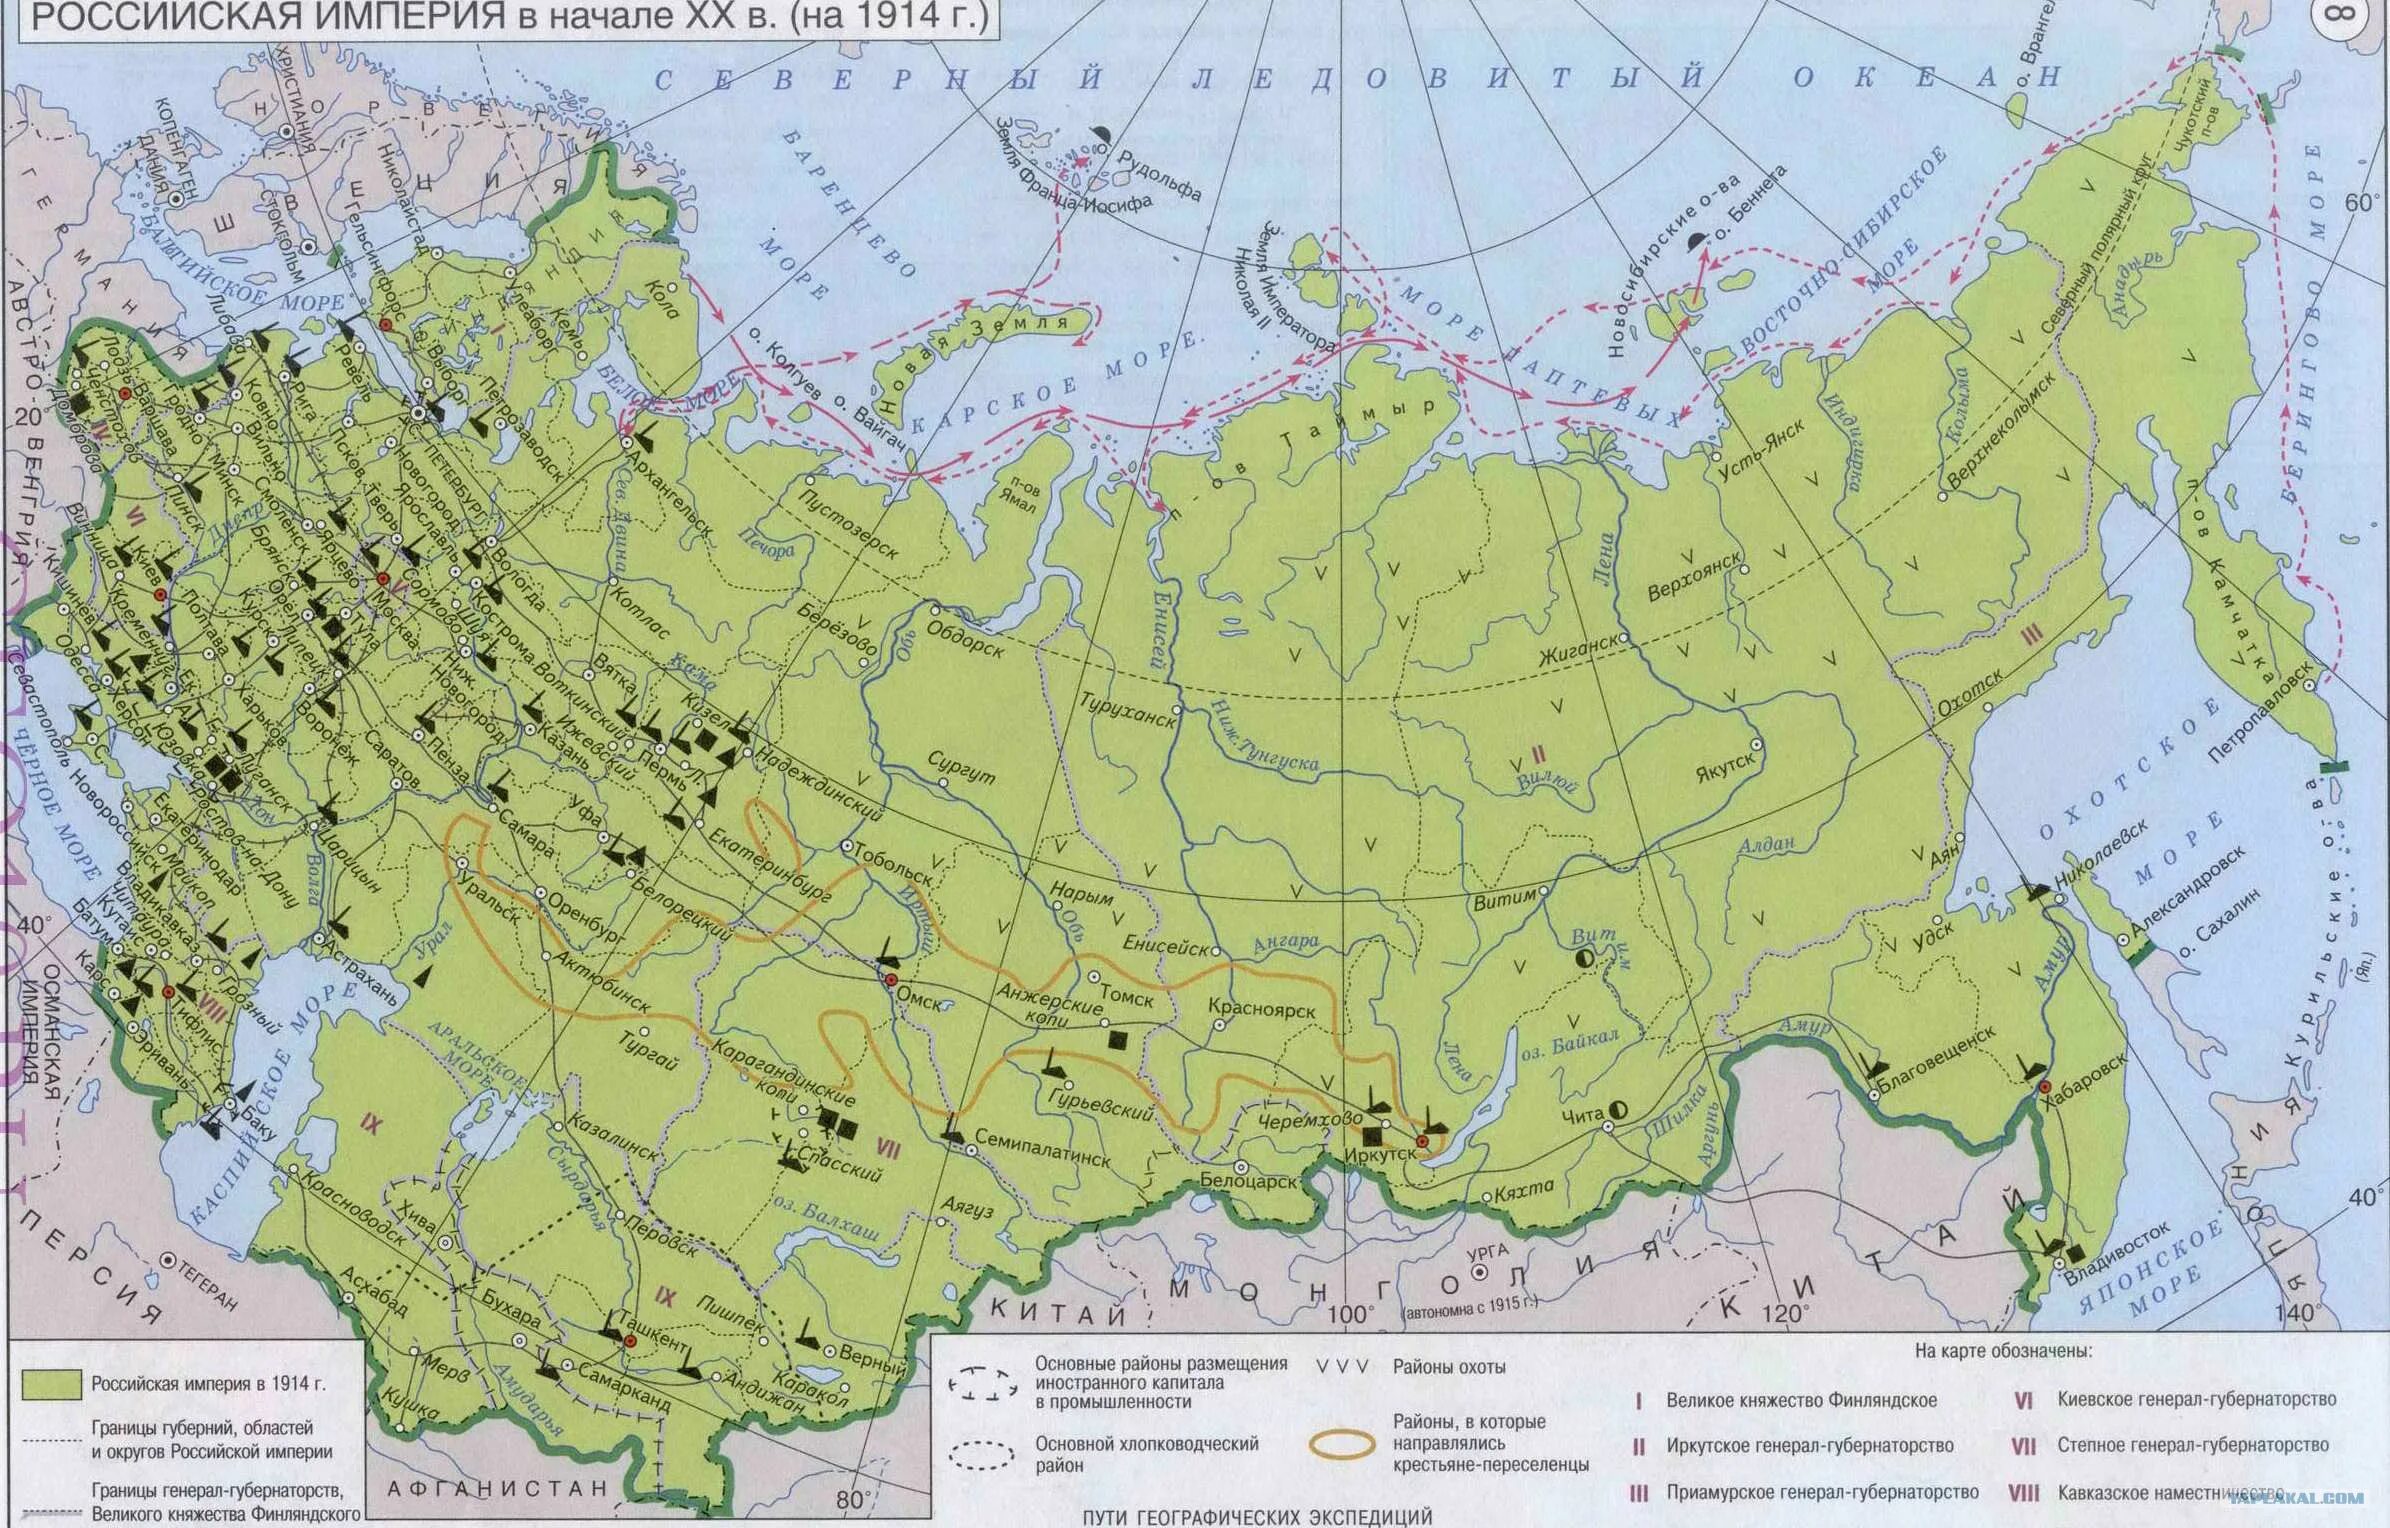 Карта Российской империи 1914 года. Крата росси1ской империи 1914. Границы Российской империи до 1914 года карта.